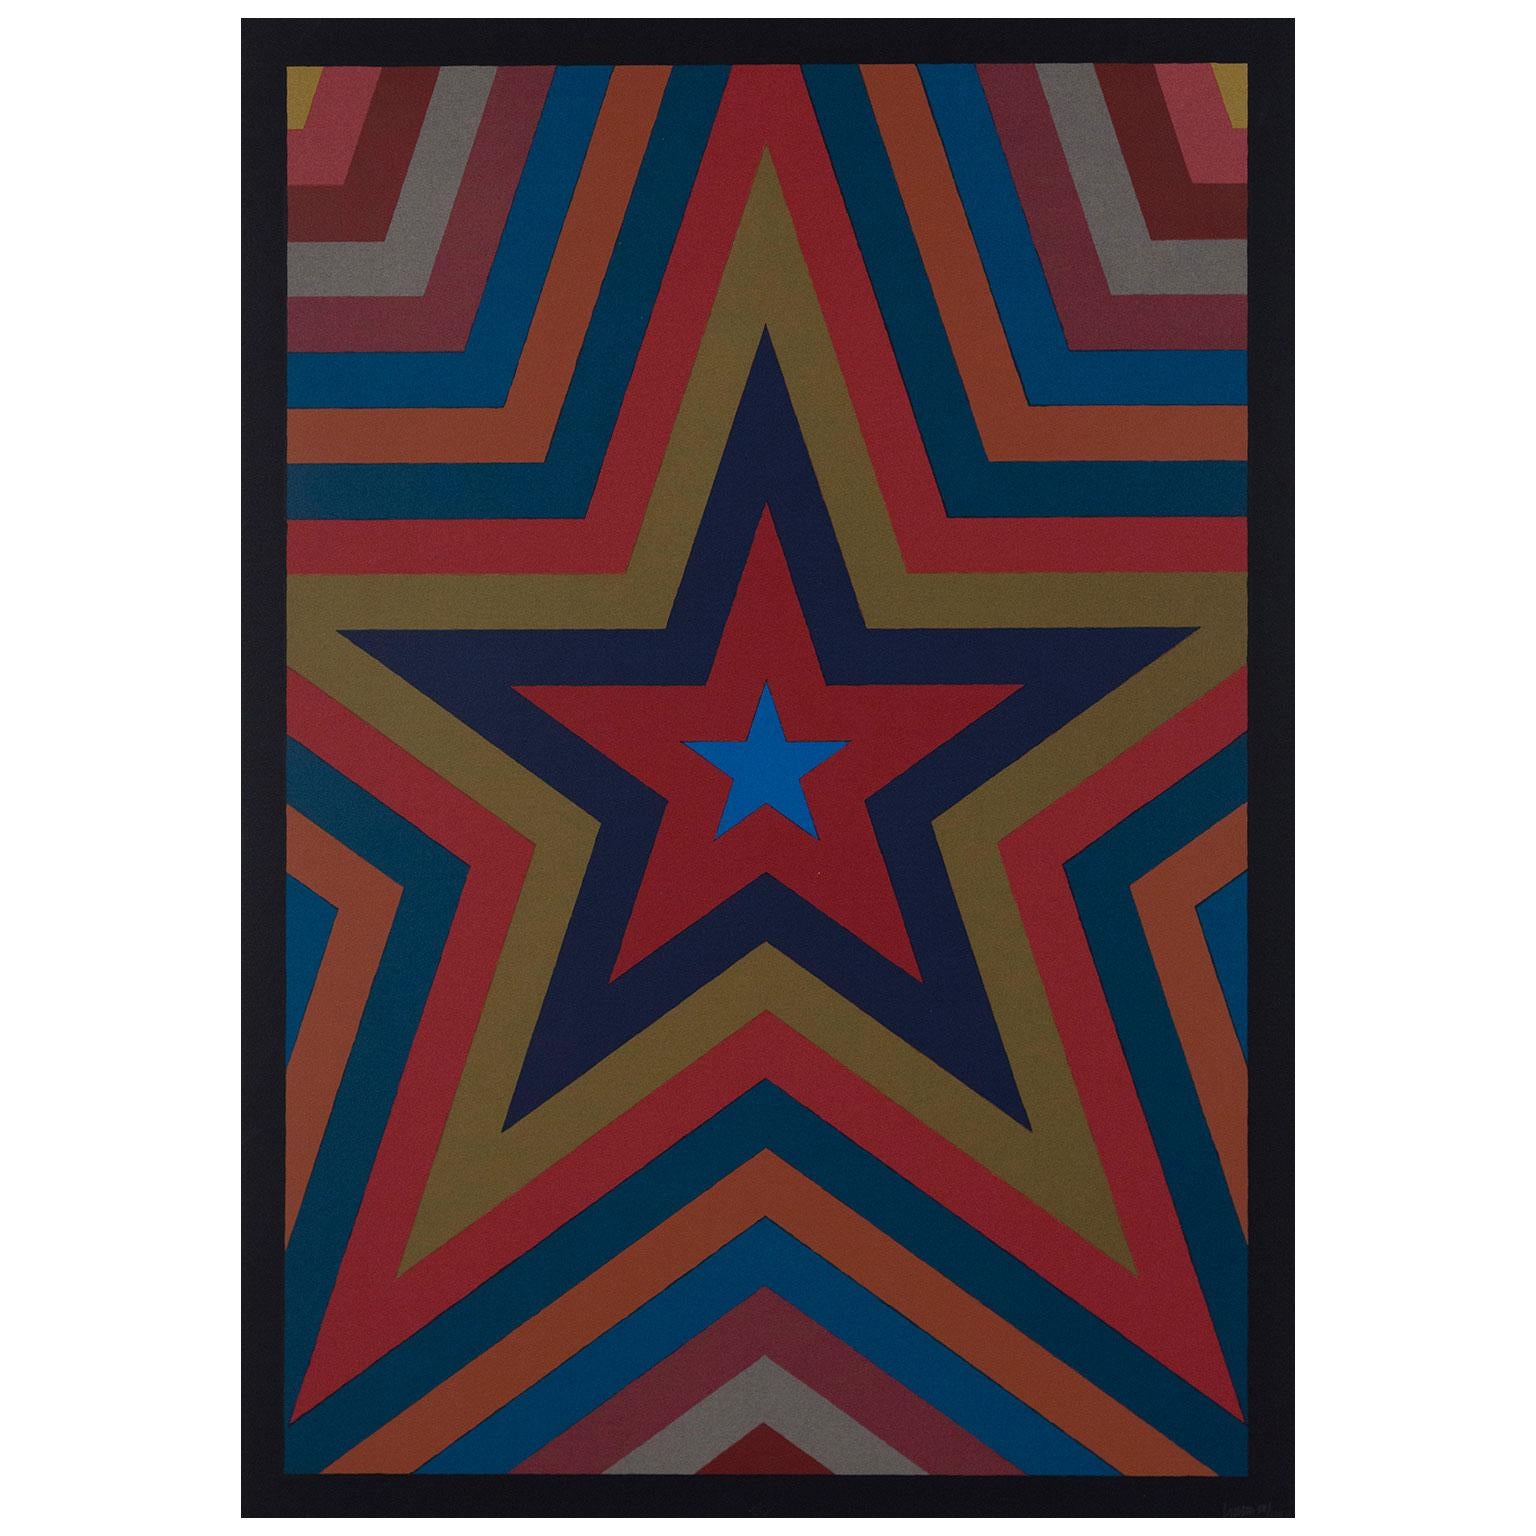 Abstract Print Sol LeWitt - Étoile à cinq branches avec bandes de couleur